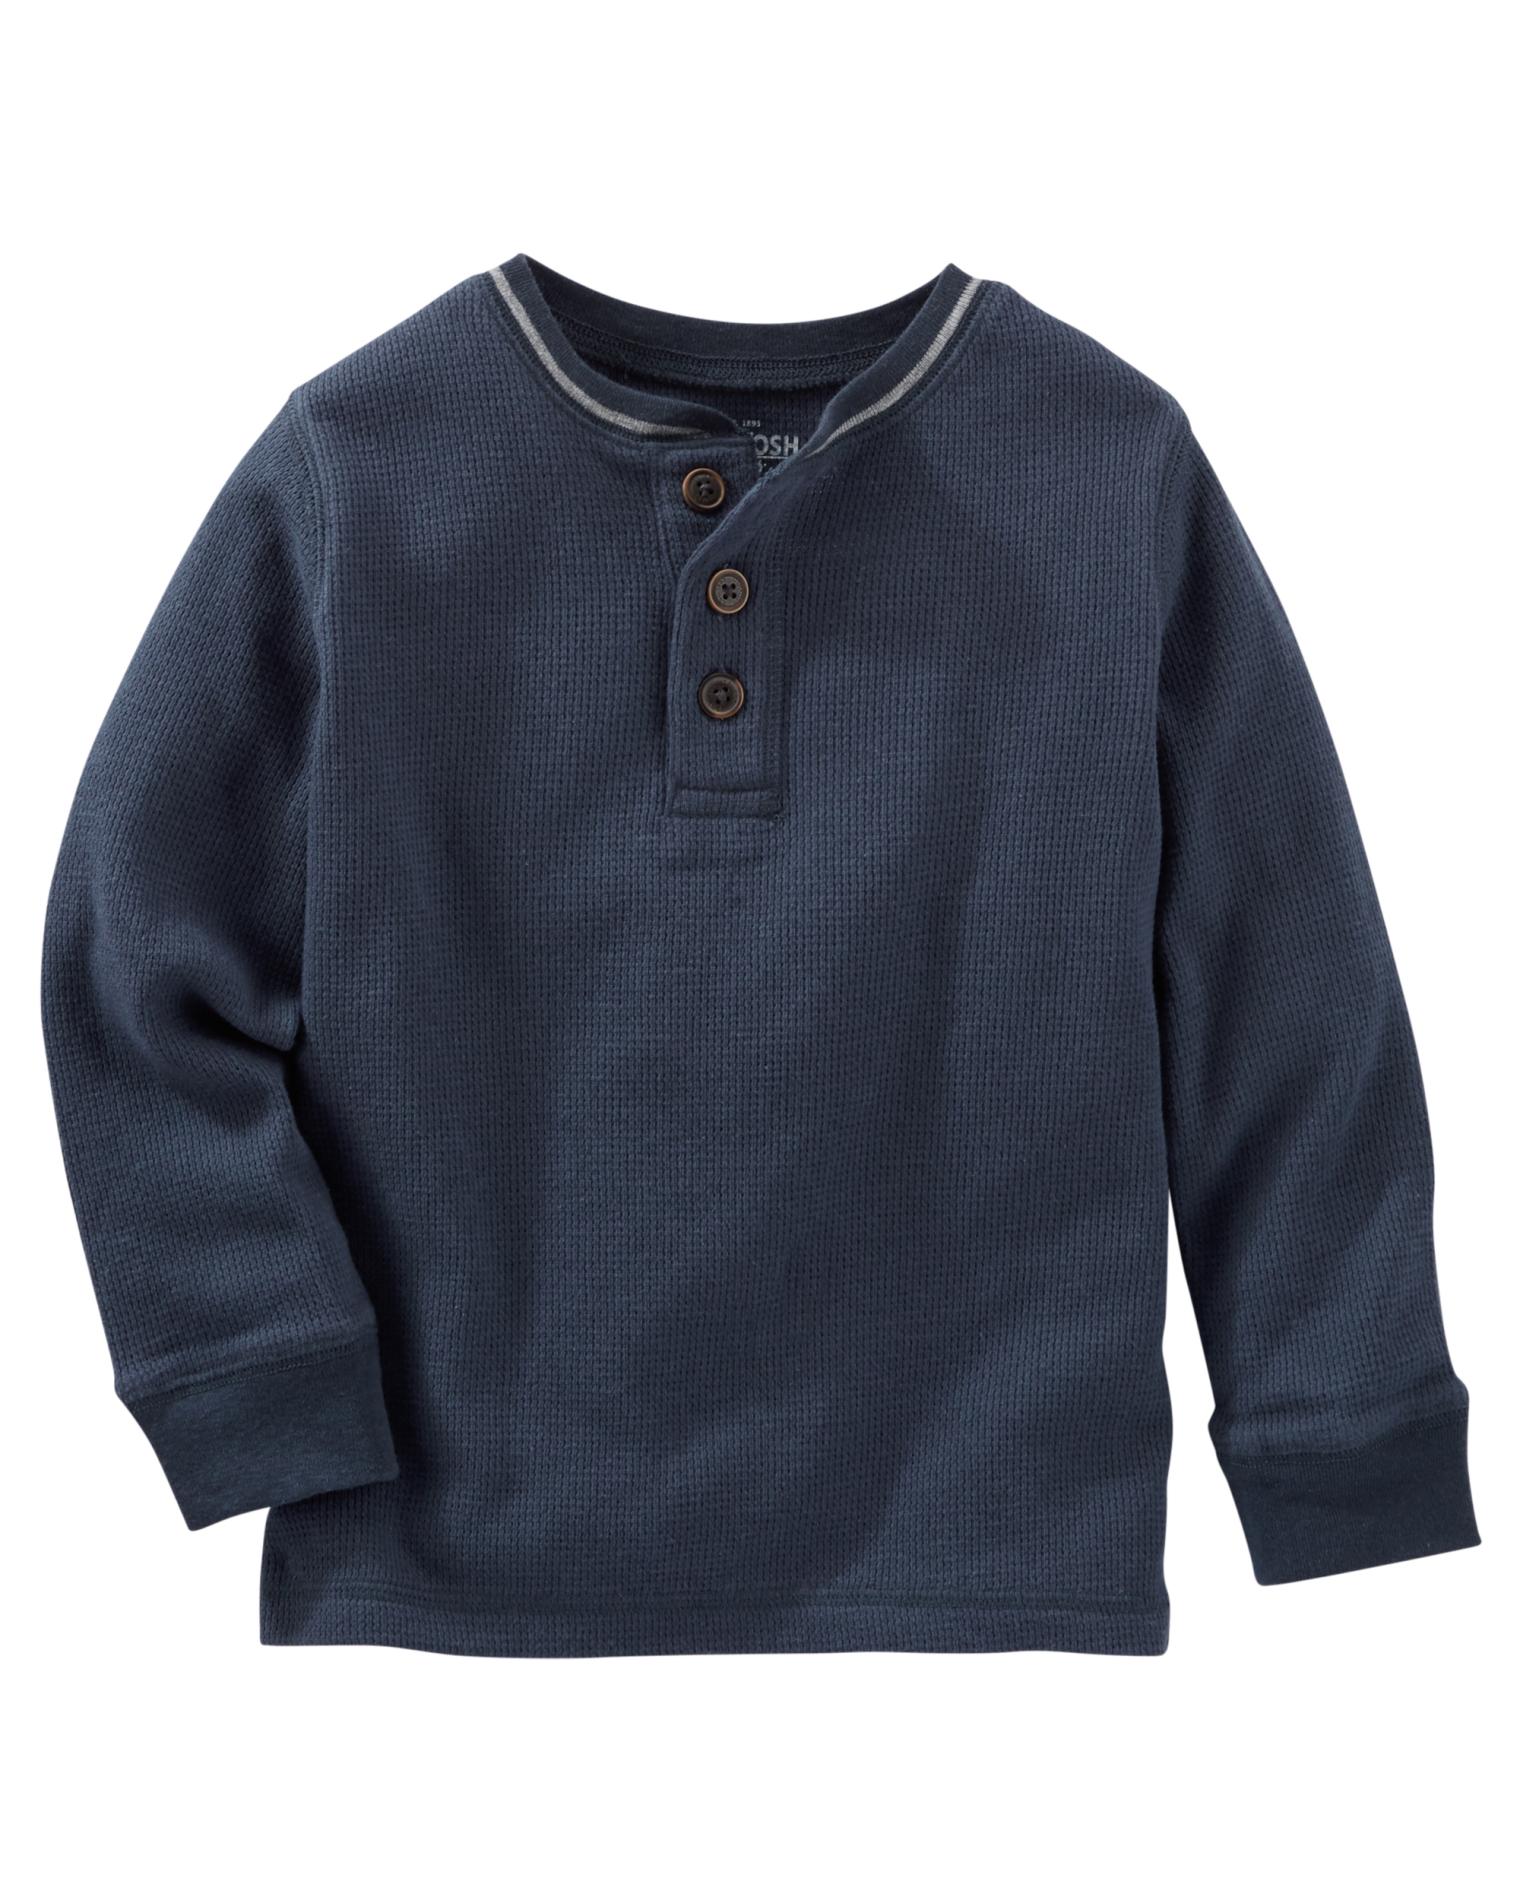 OshKosh Toddler Boys' Thermal Henley Shirt